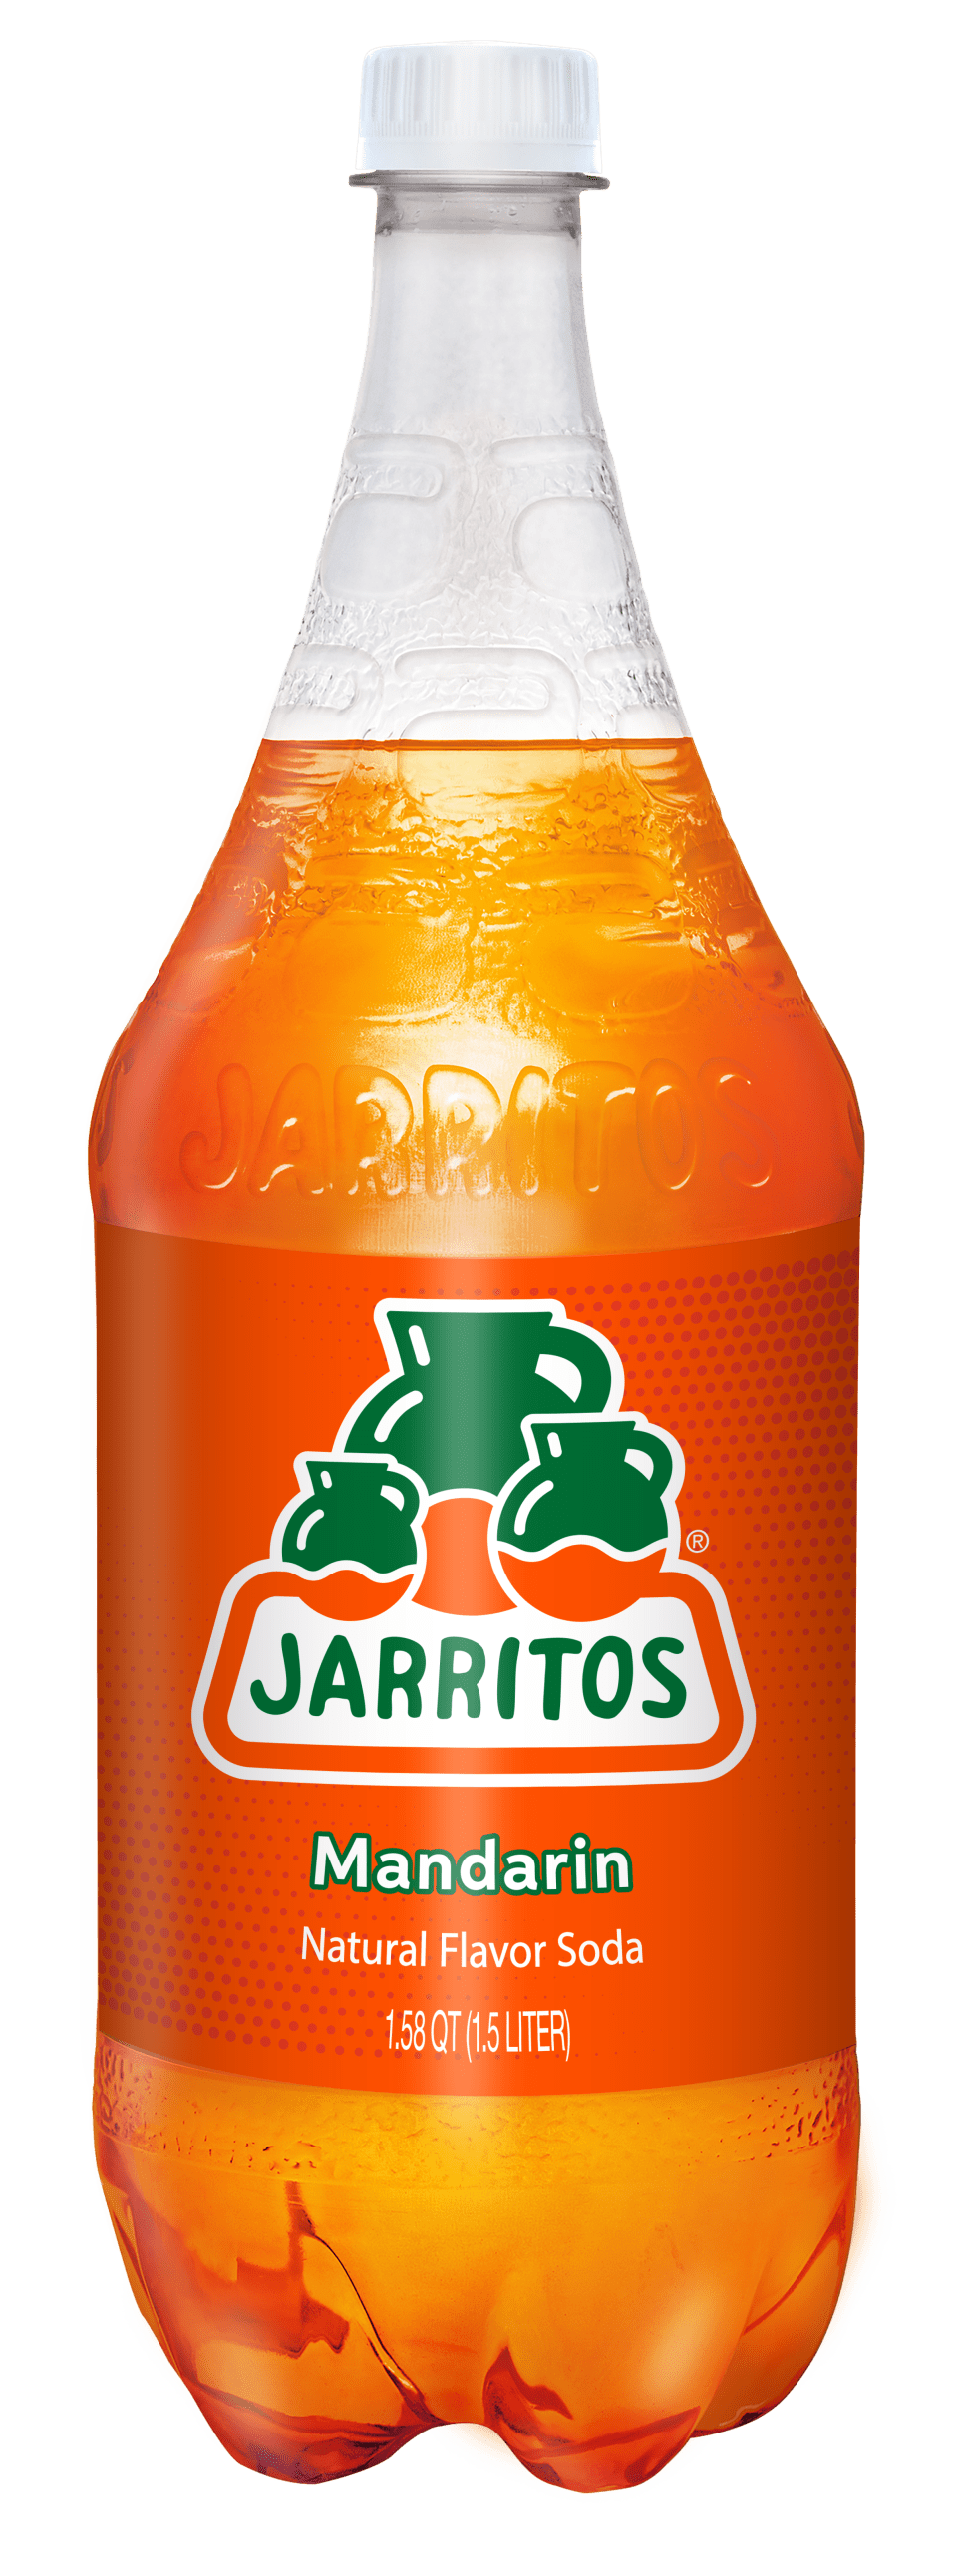 Jarritos Mandarin Soda, 1.58 qt